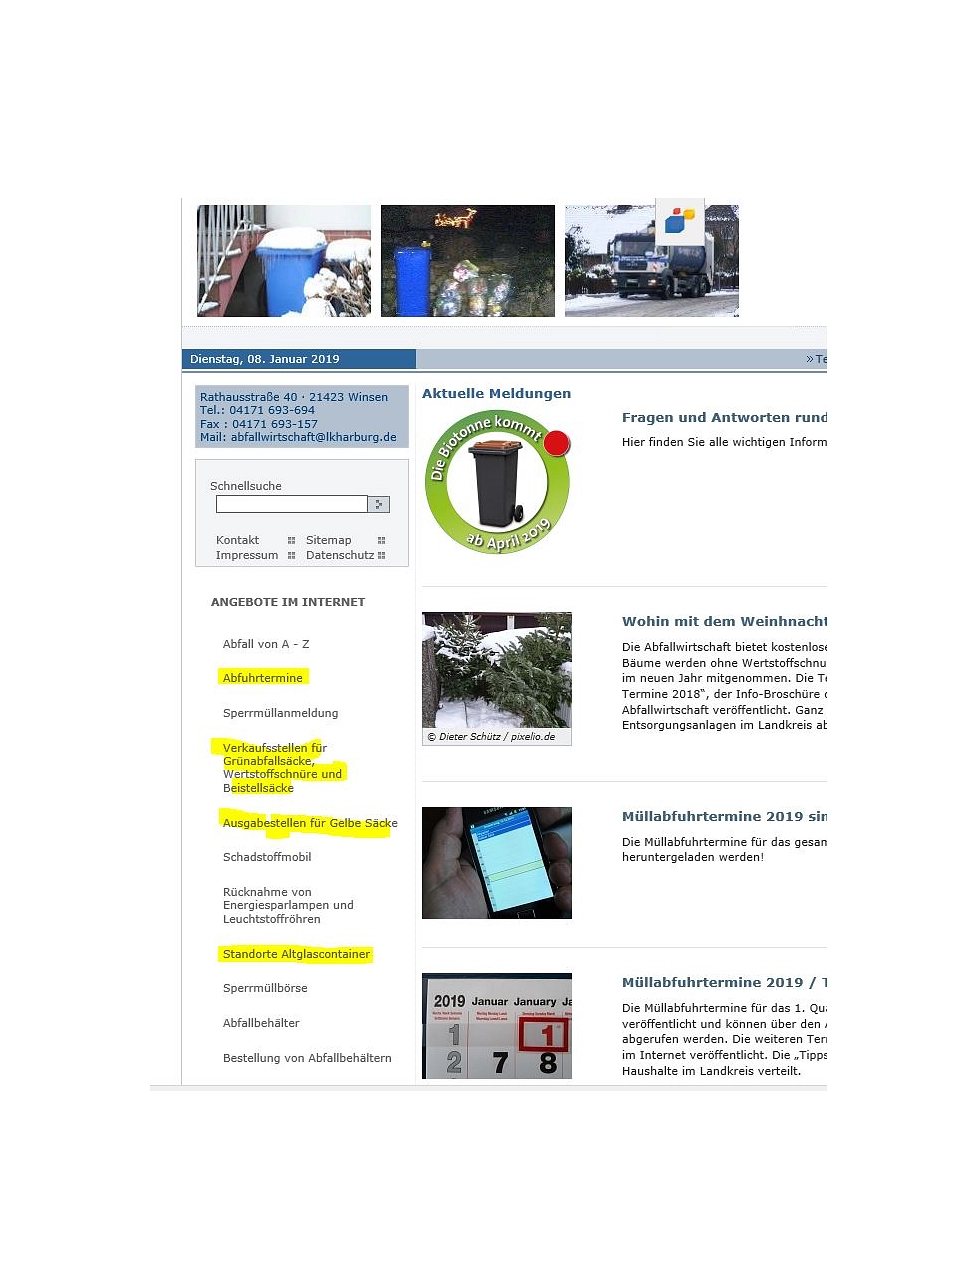 Navigationsbereich Internet-Seiten der Abfallwirtschaft © Landkreis Harburg